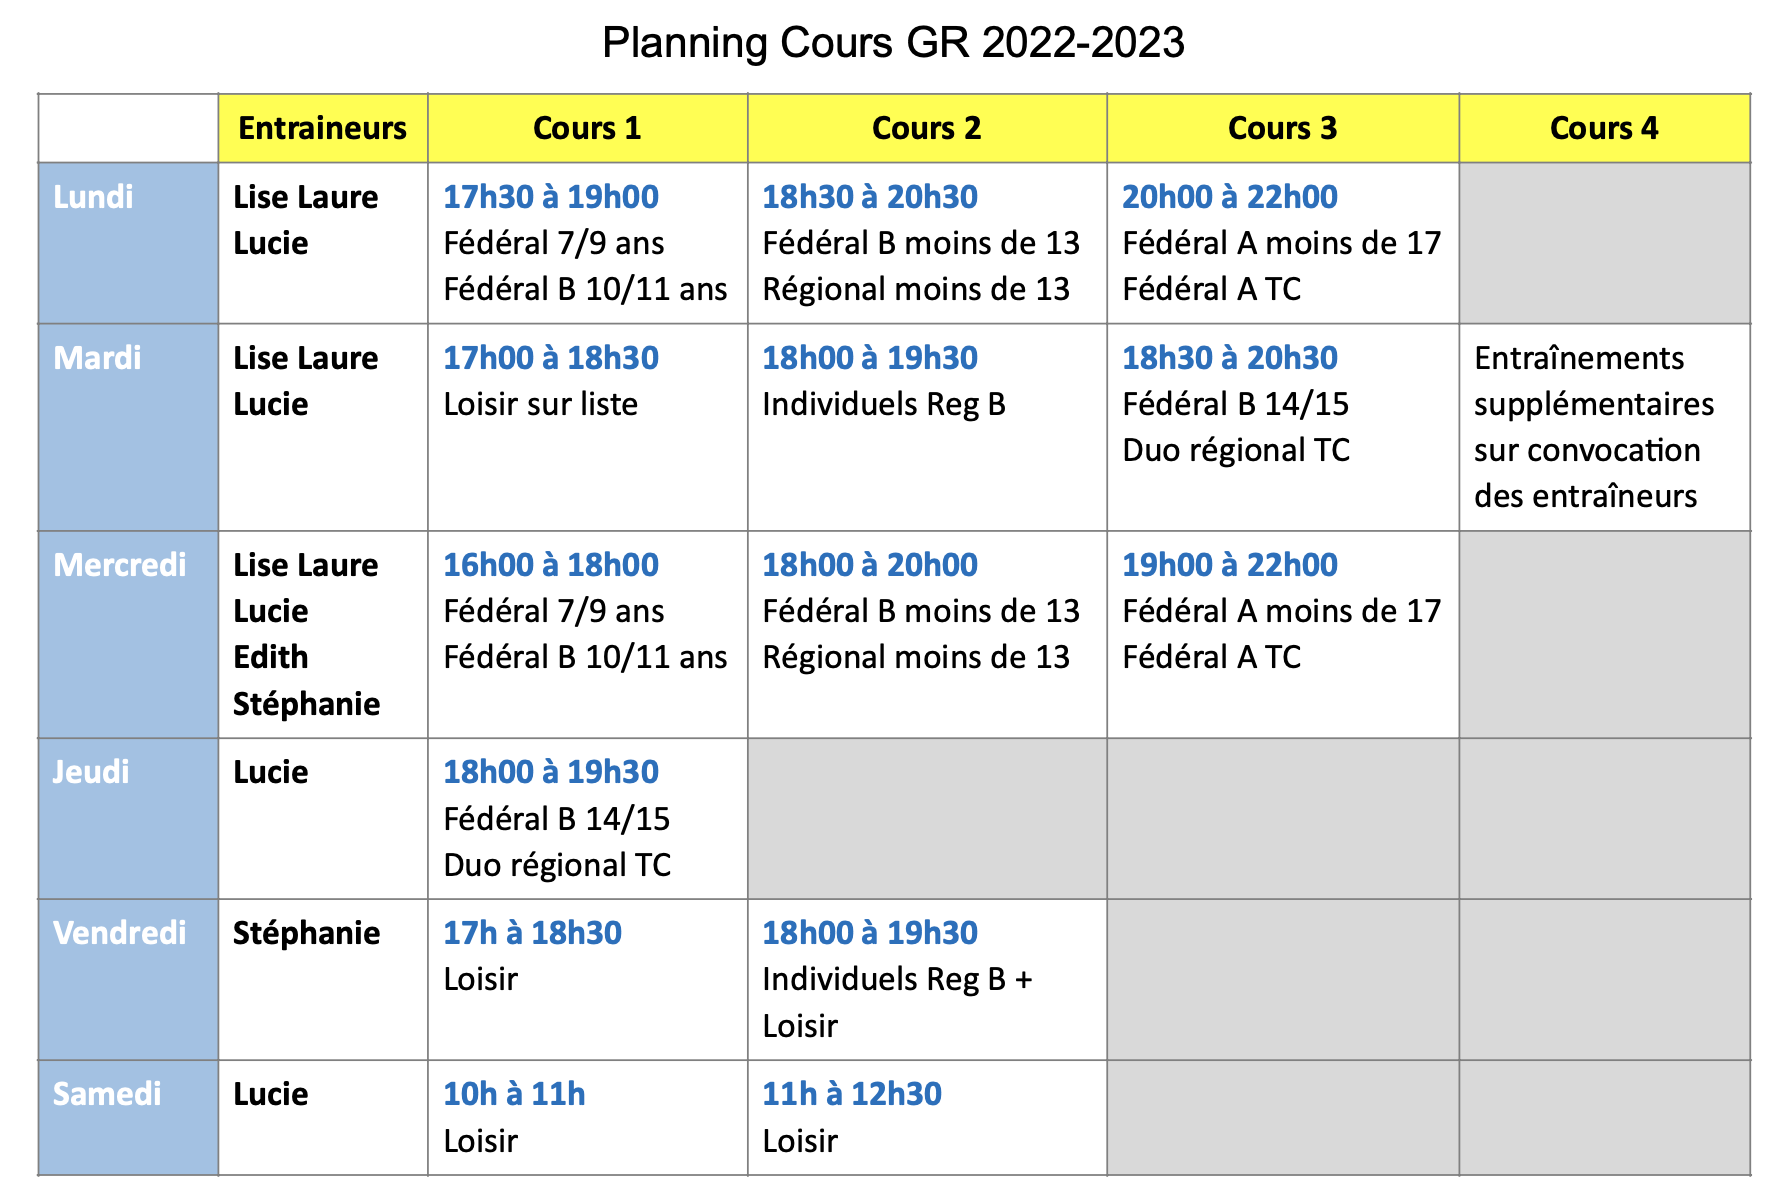 Planning de la GR pour 2022/2023